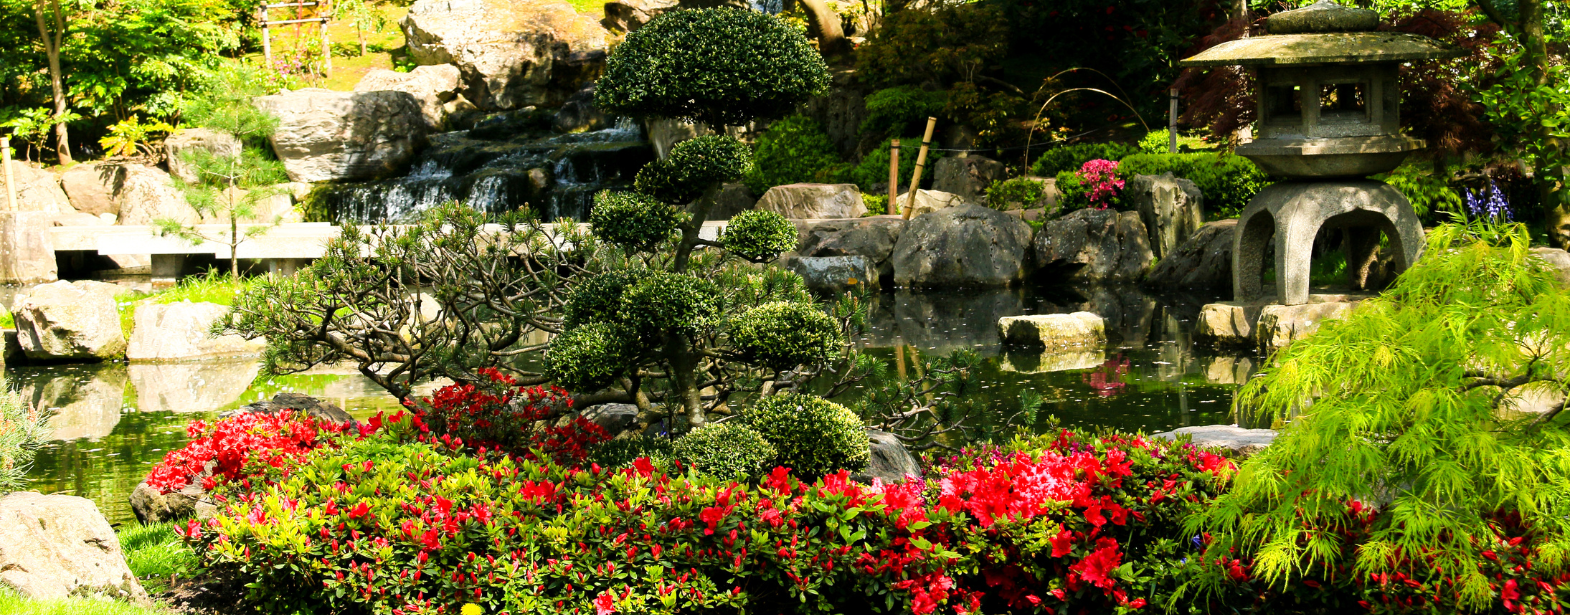 Ogród japoński - jak zaprojektować i urządzić przestrzeń w stylu orientalnym?